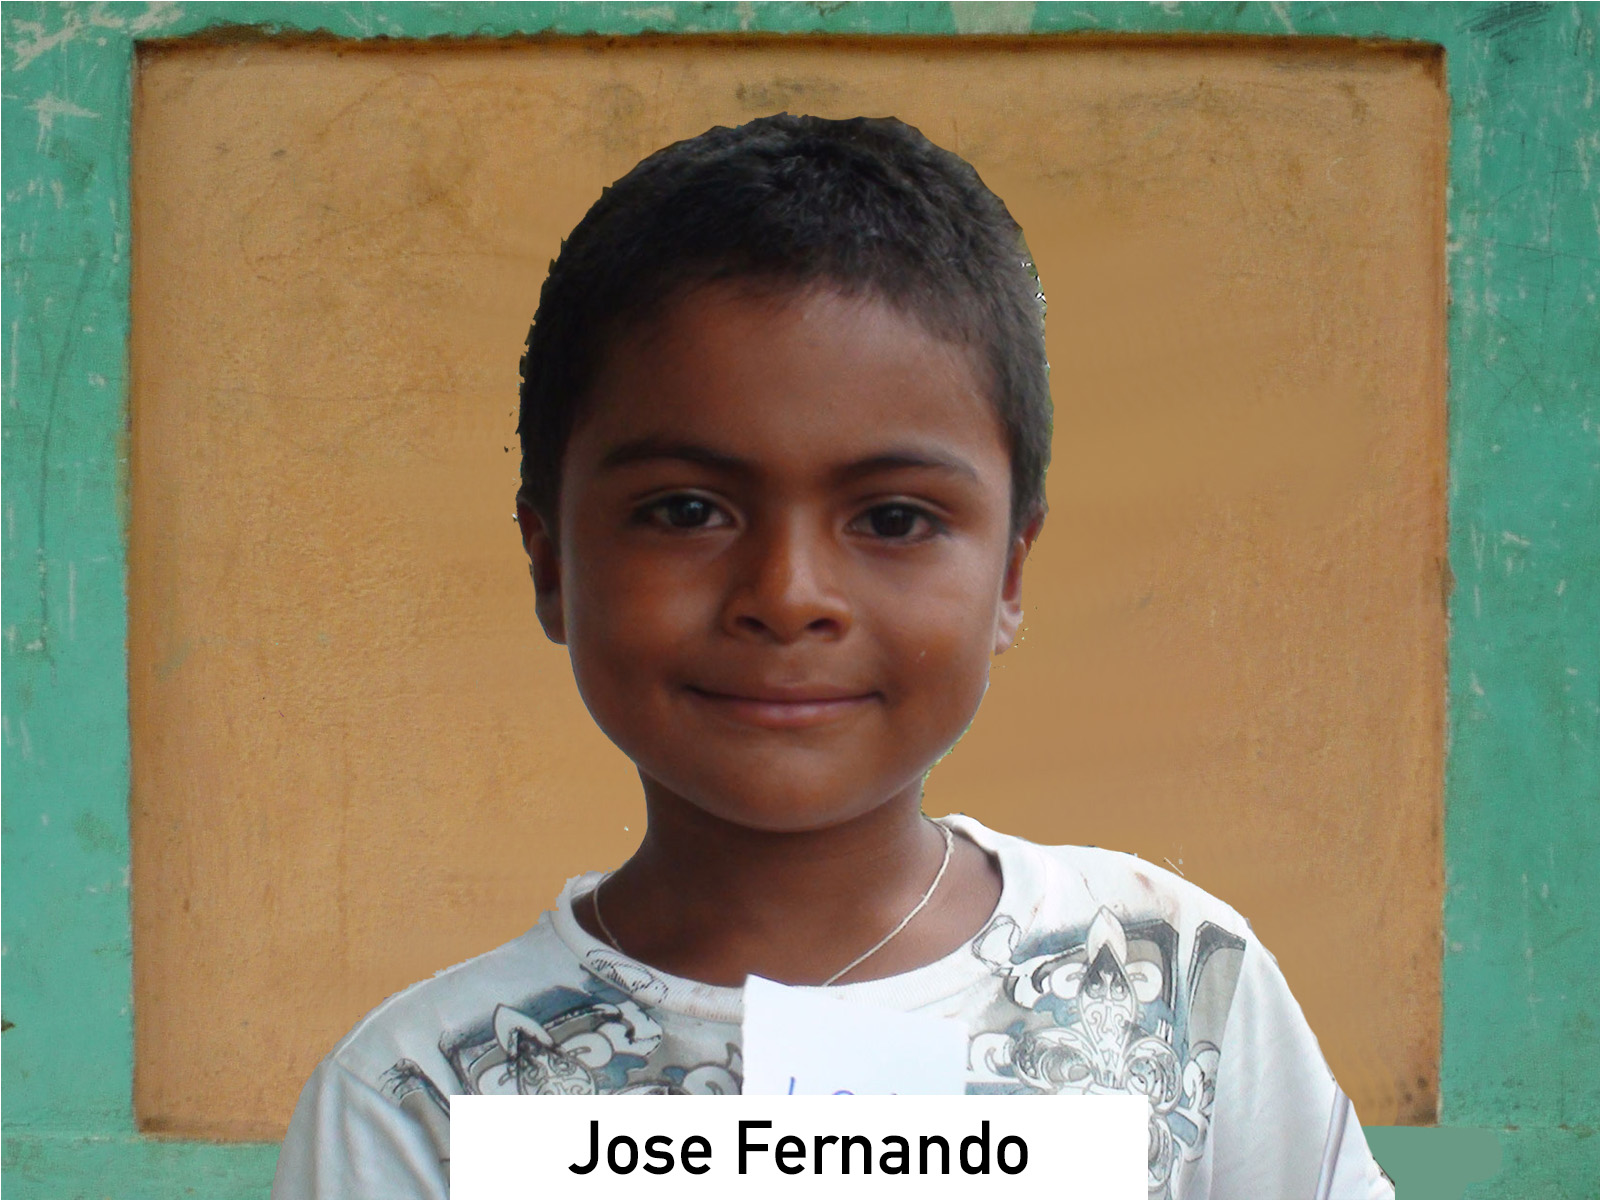 101 - Jose Fernando.jpg